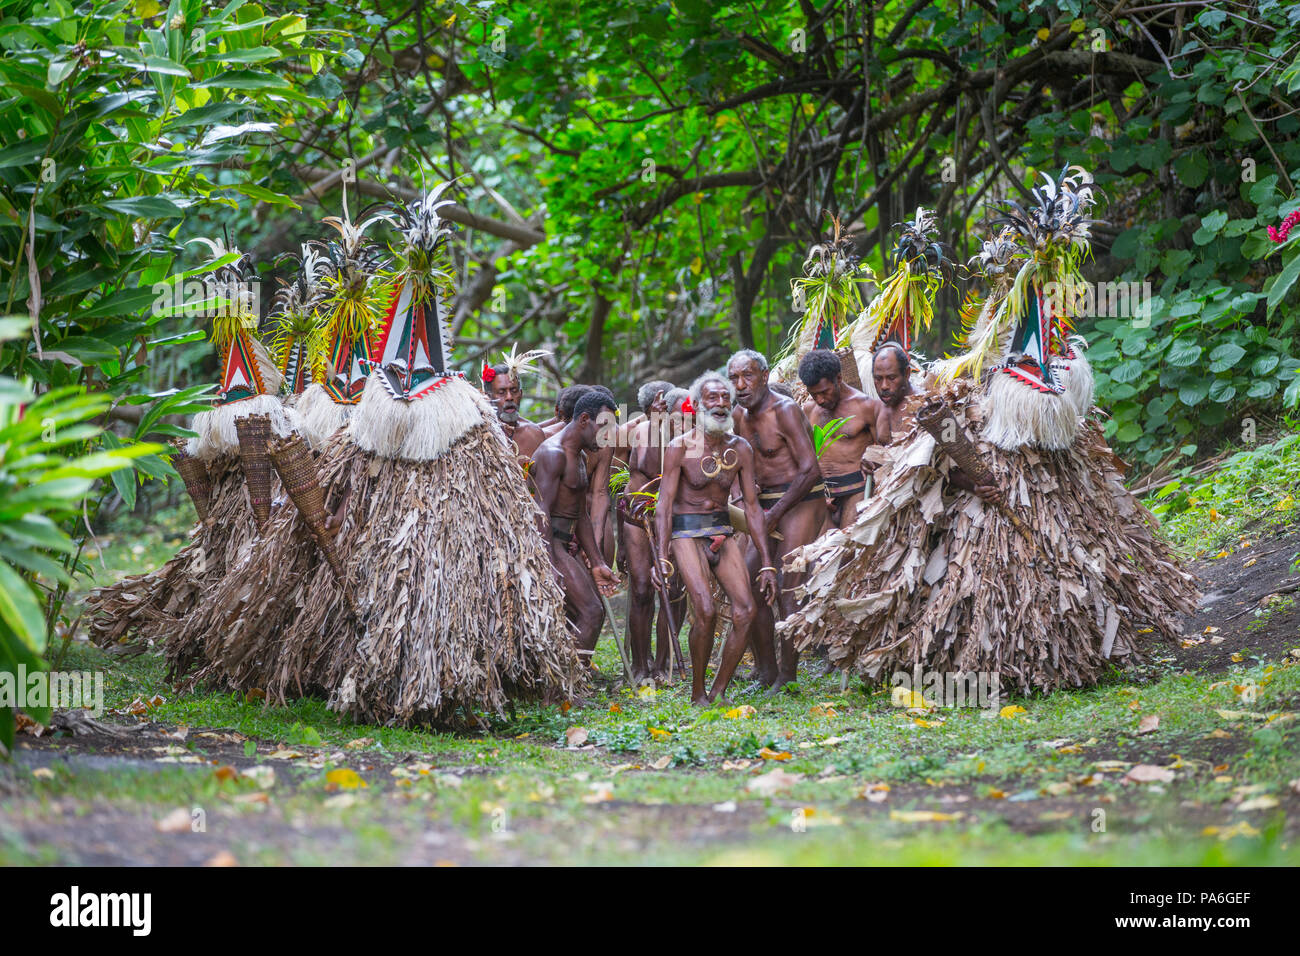 Rom Dance, l'île d'Ambrym, Vanuatu Banque D'Images